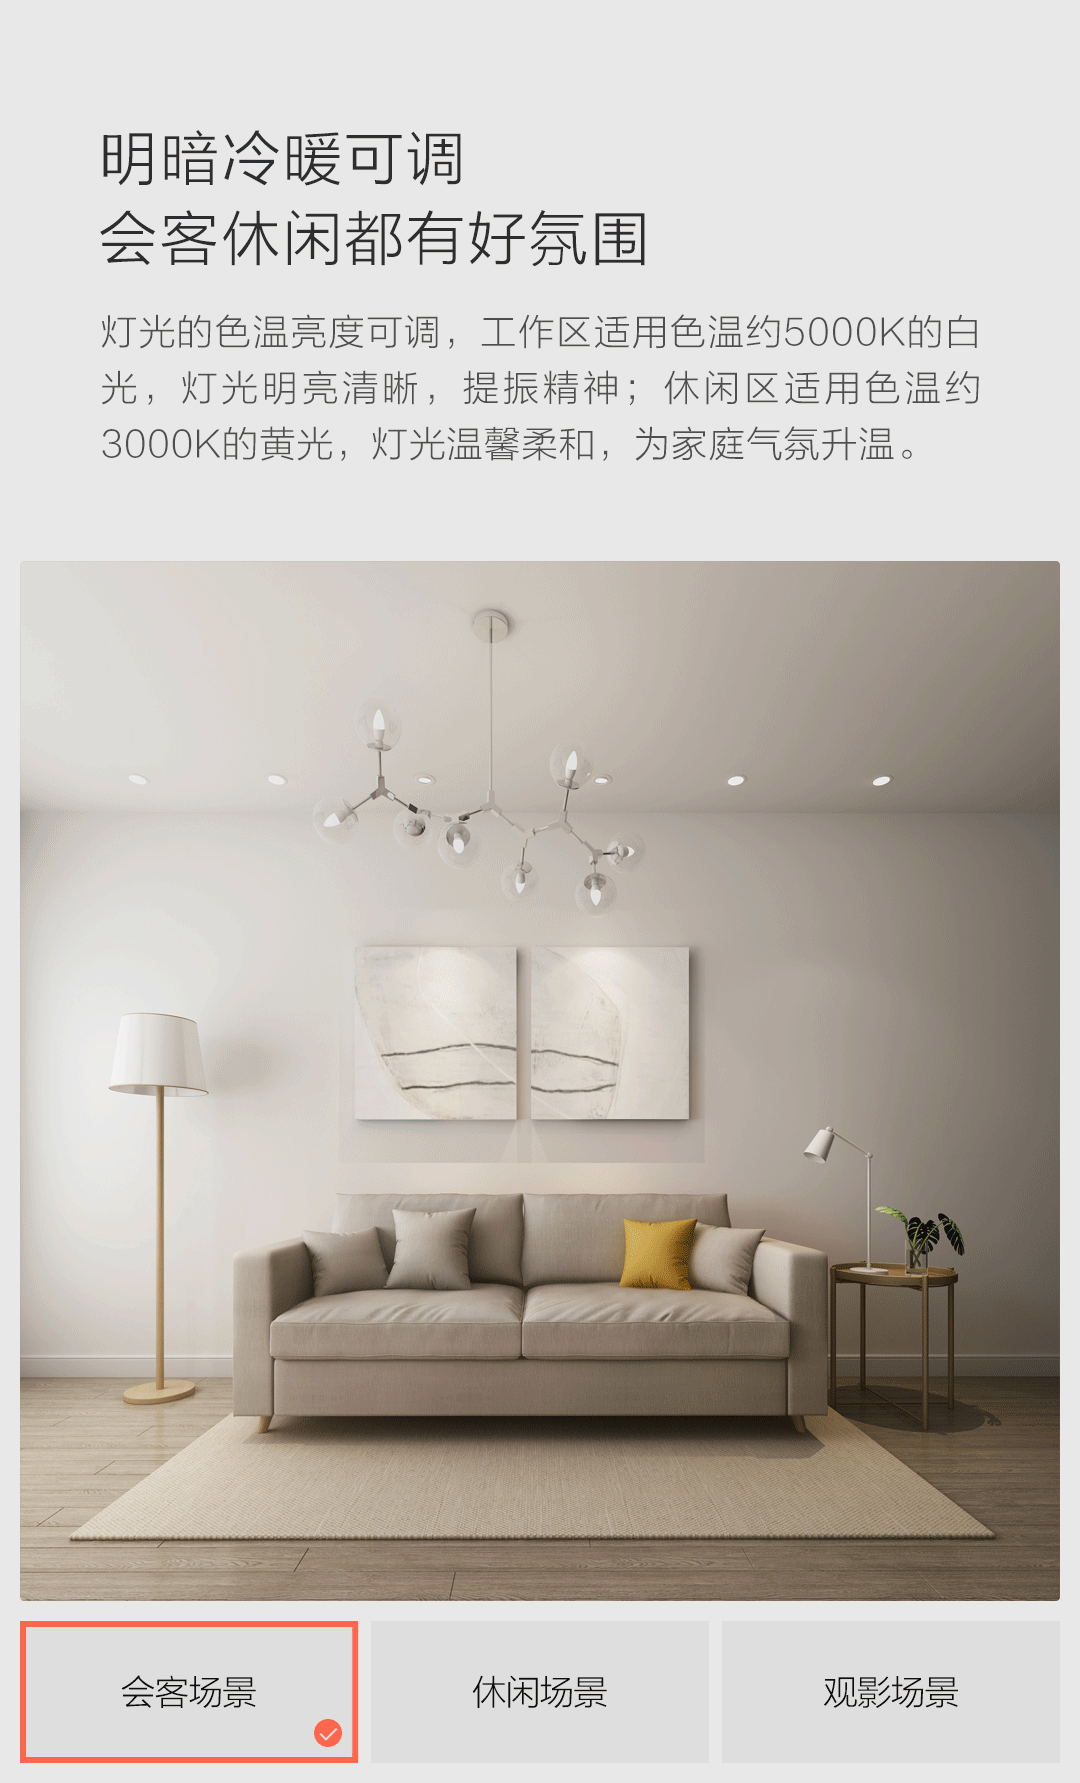 Yeelight Mesh a new set of light bulbs on the Xiaomi offer